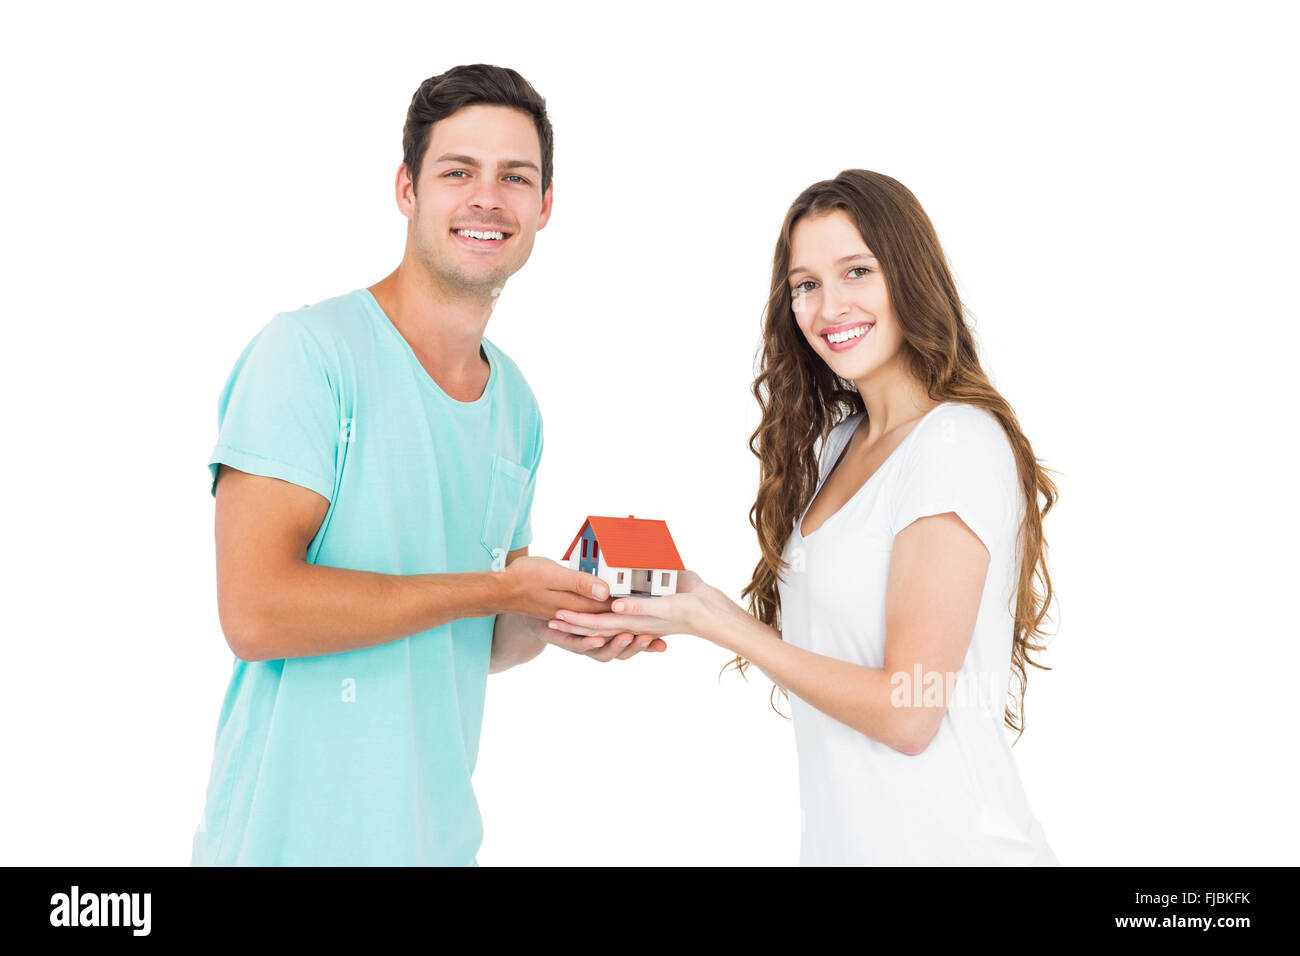 Heureux couple holding miniature house Banque D'Images